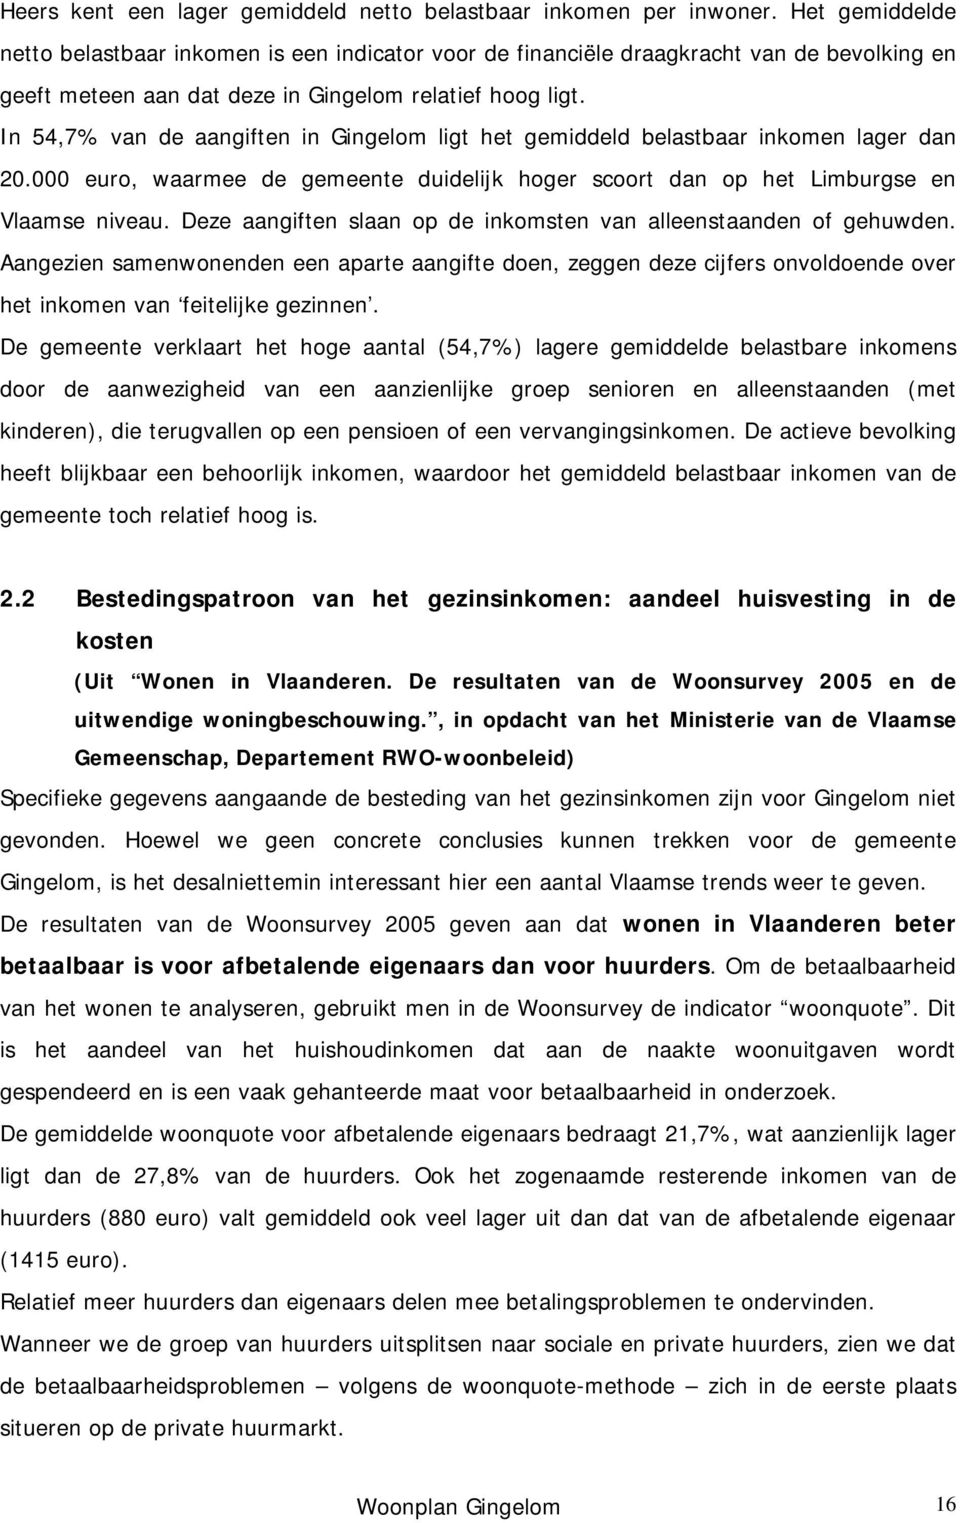 In 54,7% van de aangiften in Gingelom ligt het gemiddeld belastbaar inkomen lager dan 20.000 euro, waarmee de gemeente duidelijk hoger scoort dan op het Limburgse en Vlaamse niveau.